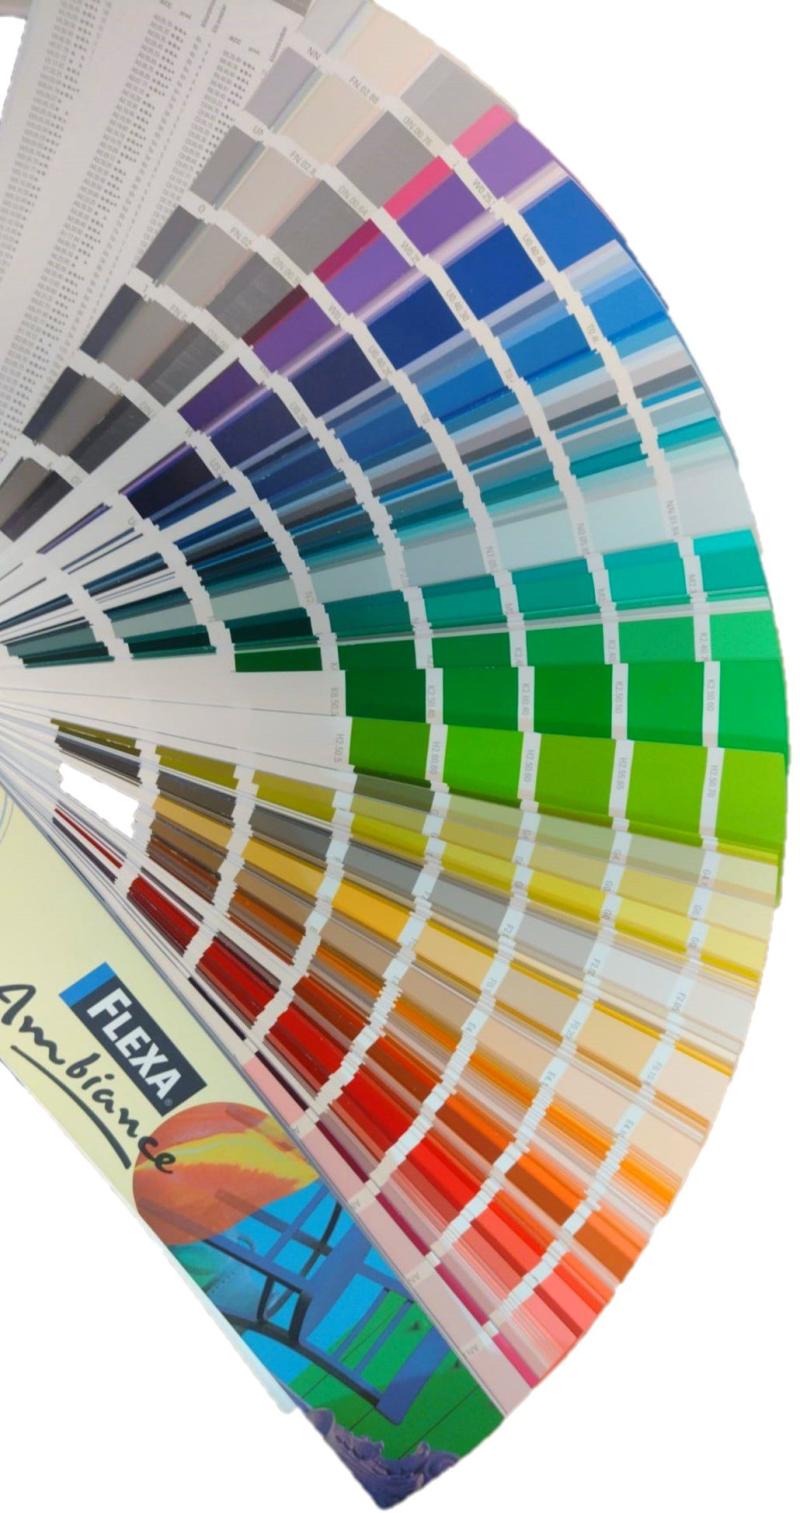 Foto van een opengevouwen kleurenwaaier voor de keuze van een kleur verf. Ieder onderdeel van de waaier heeft een kleur met verloop van donker naar licht. 